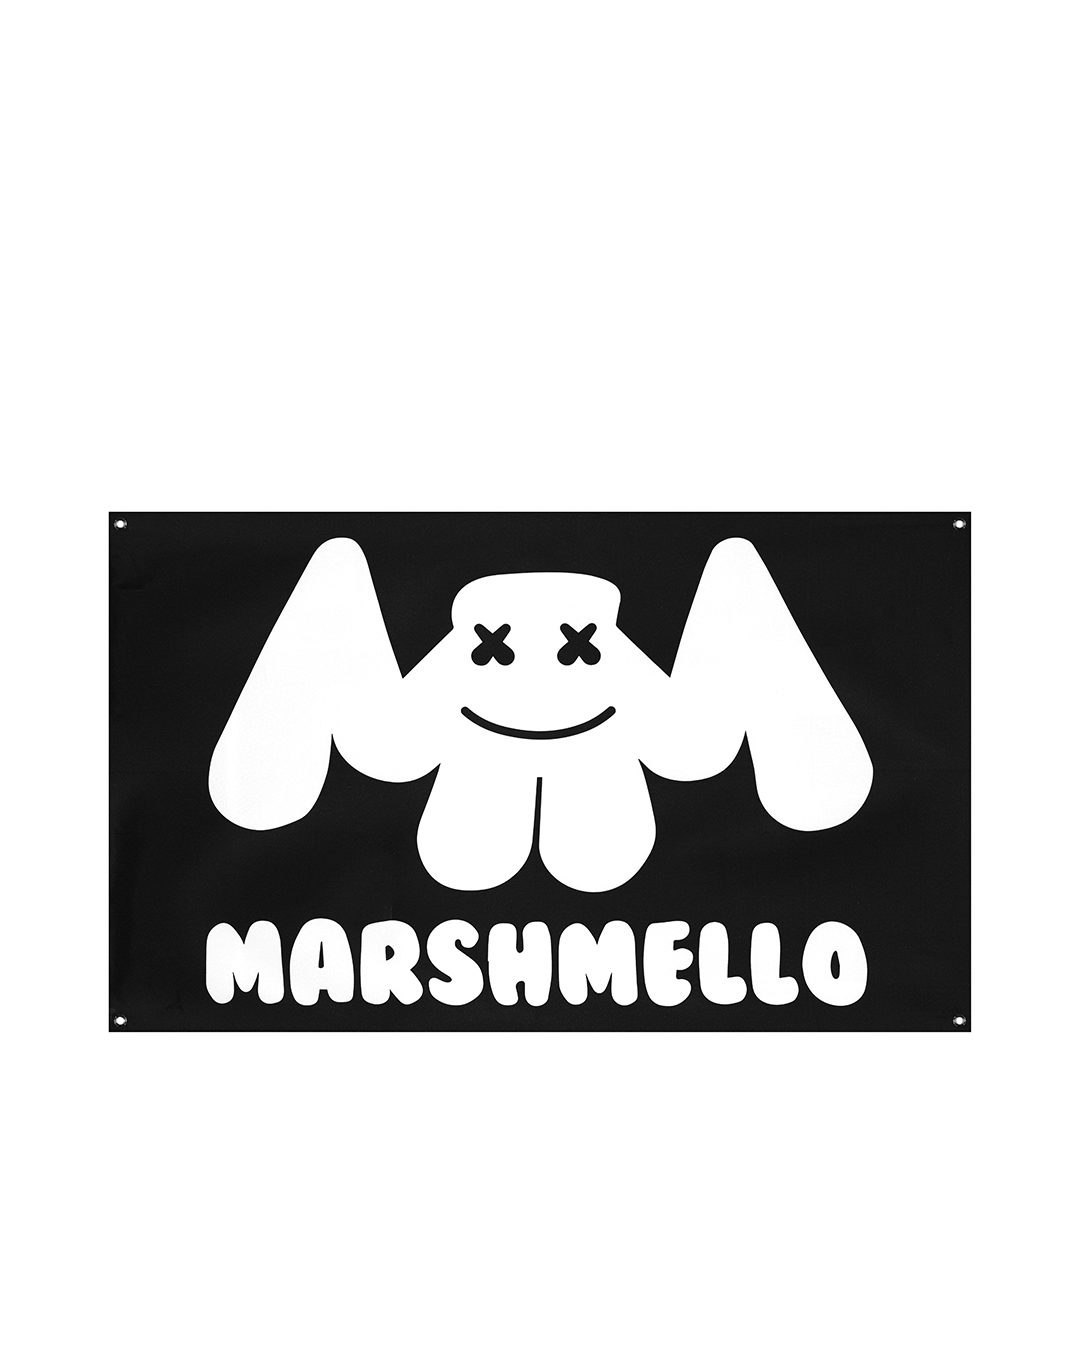 marshmello DJ #1 Digital Art by William D Chadwell - Pixels